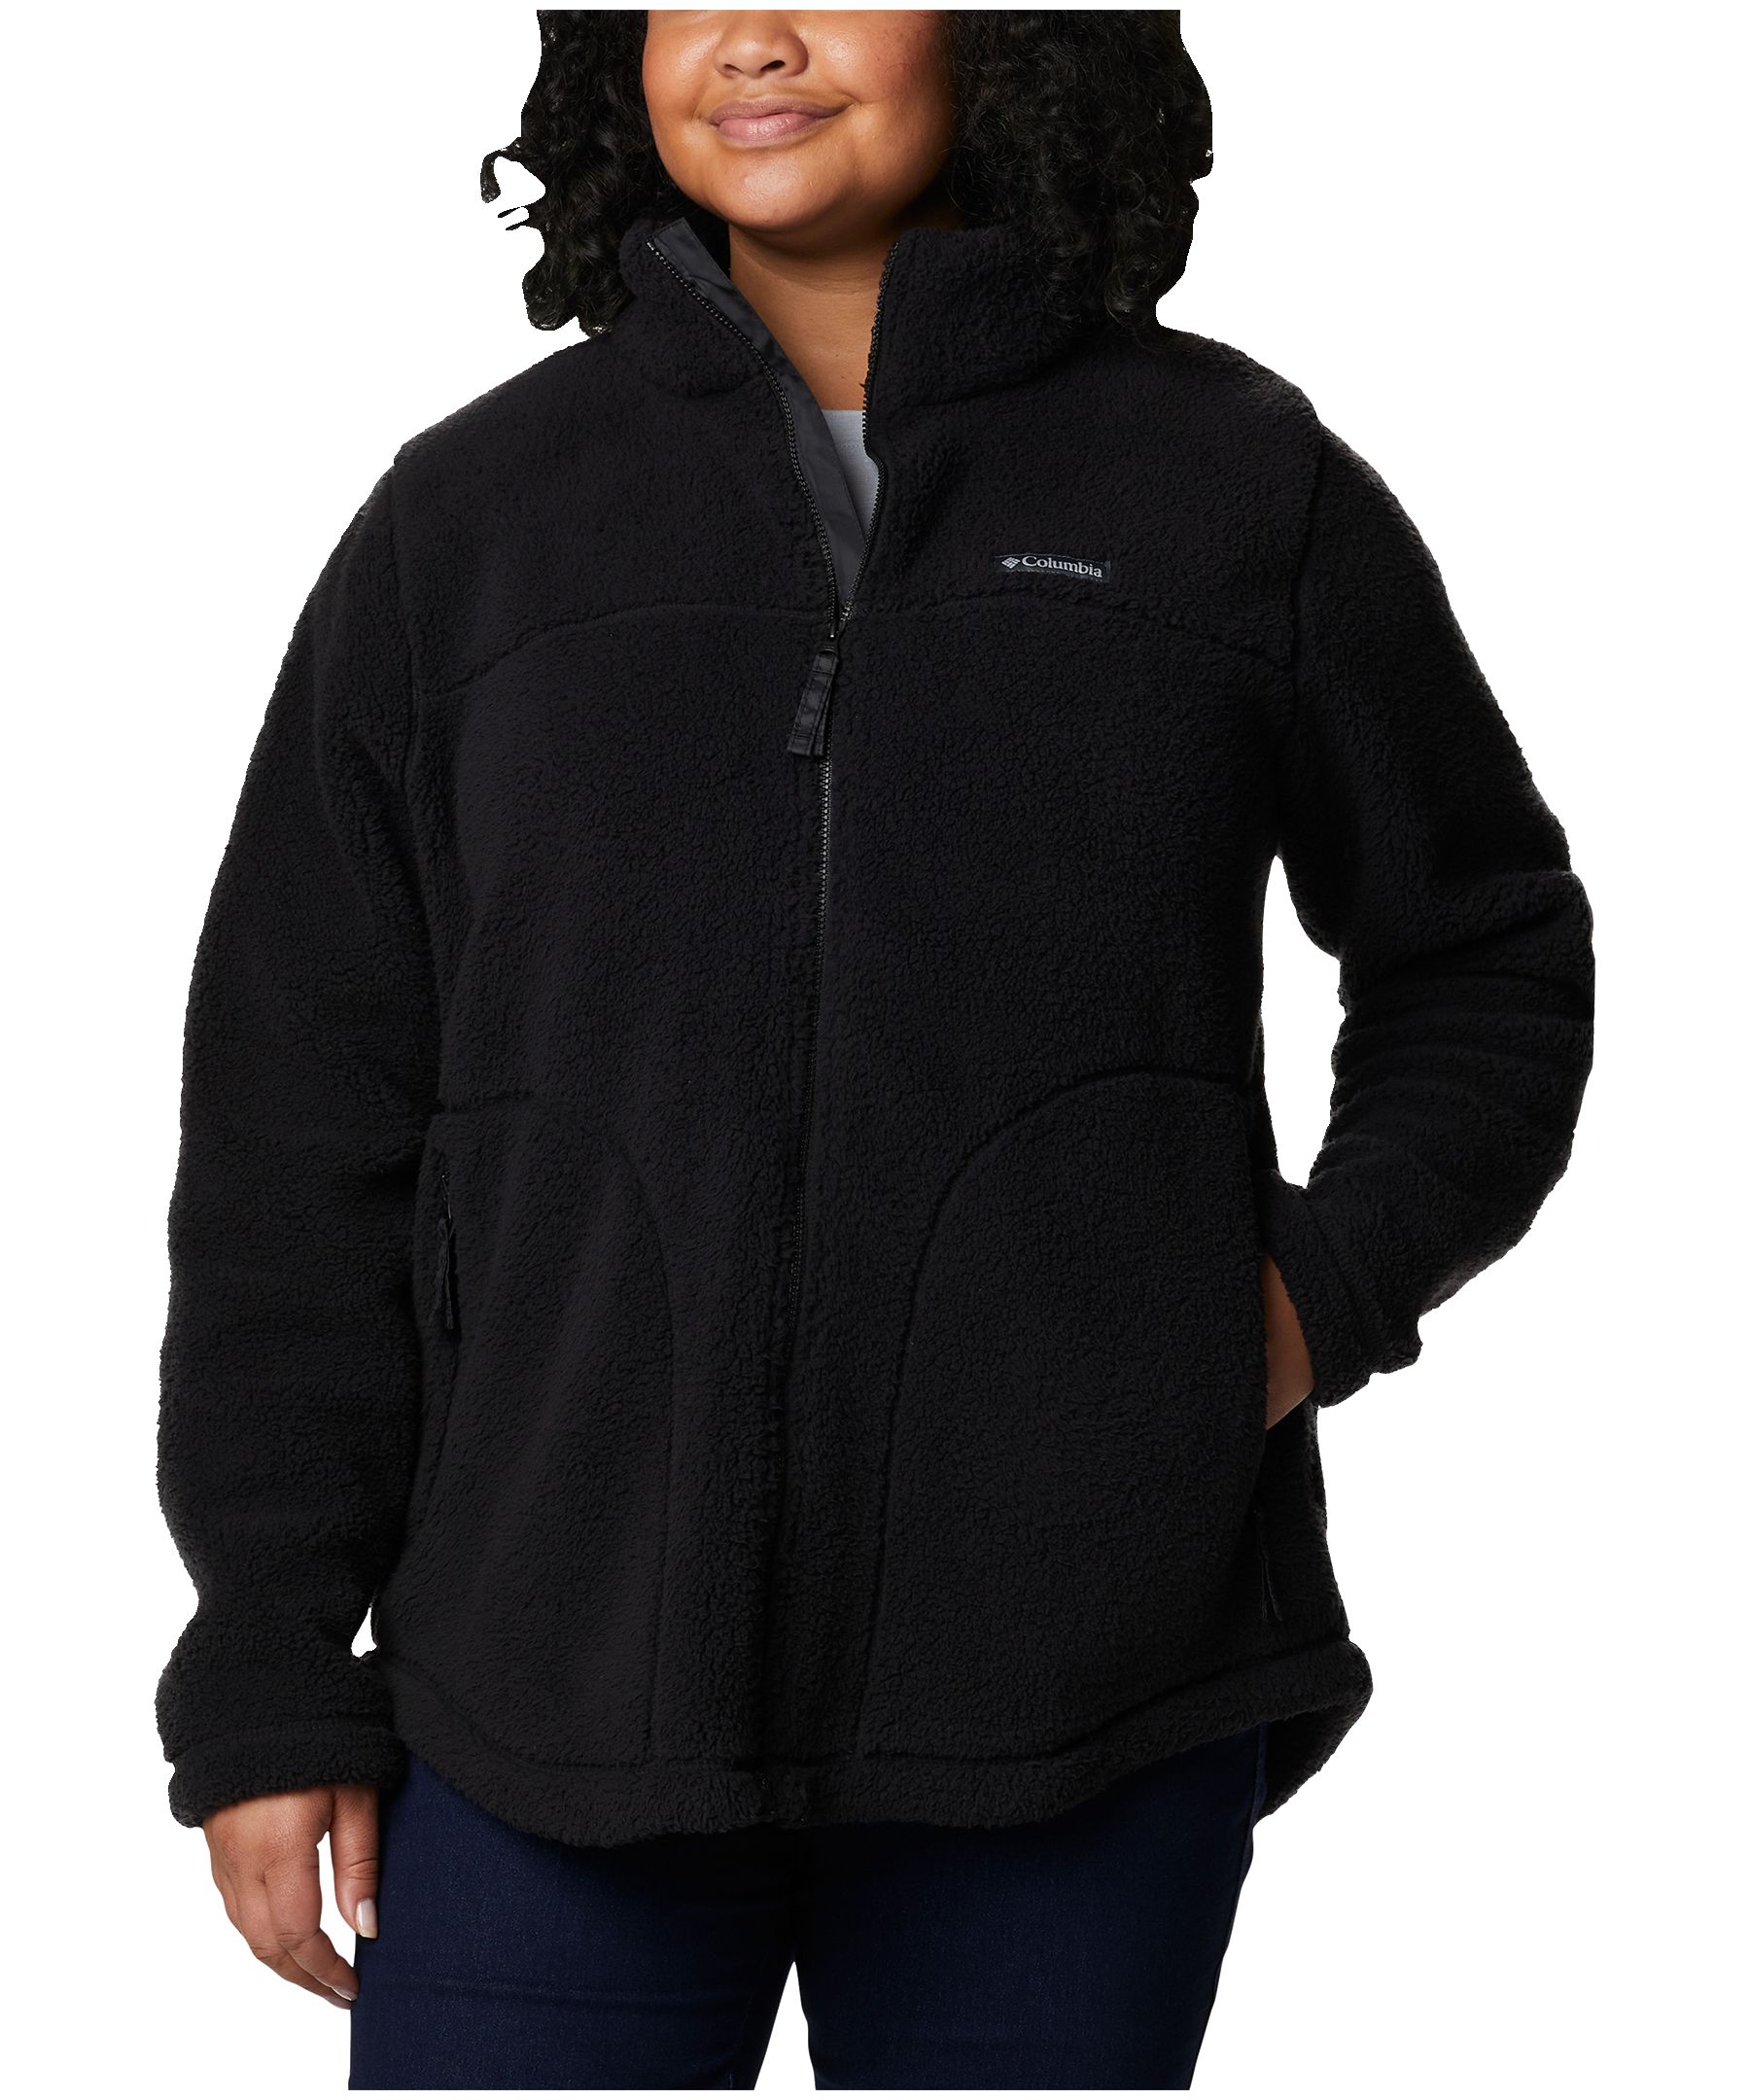 Columbia Women's West Bend Full Zip Fleece Jacket